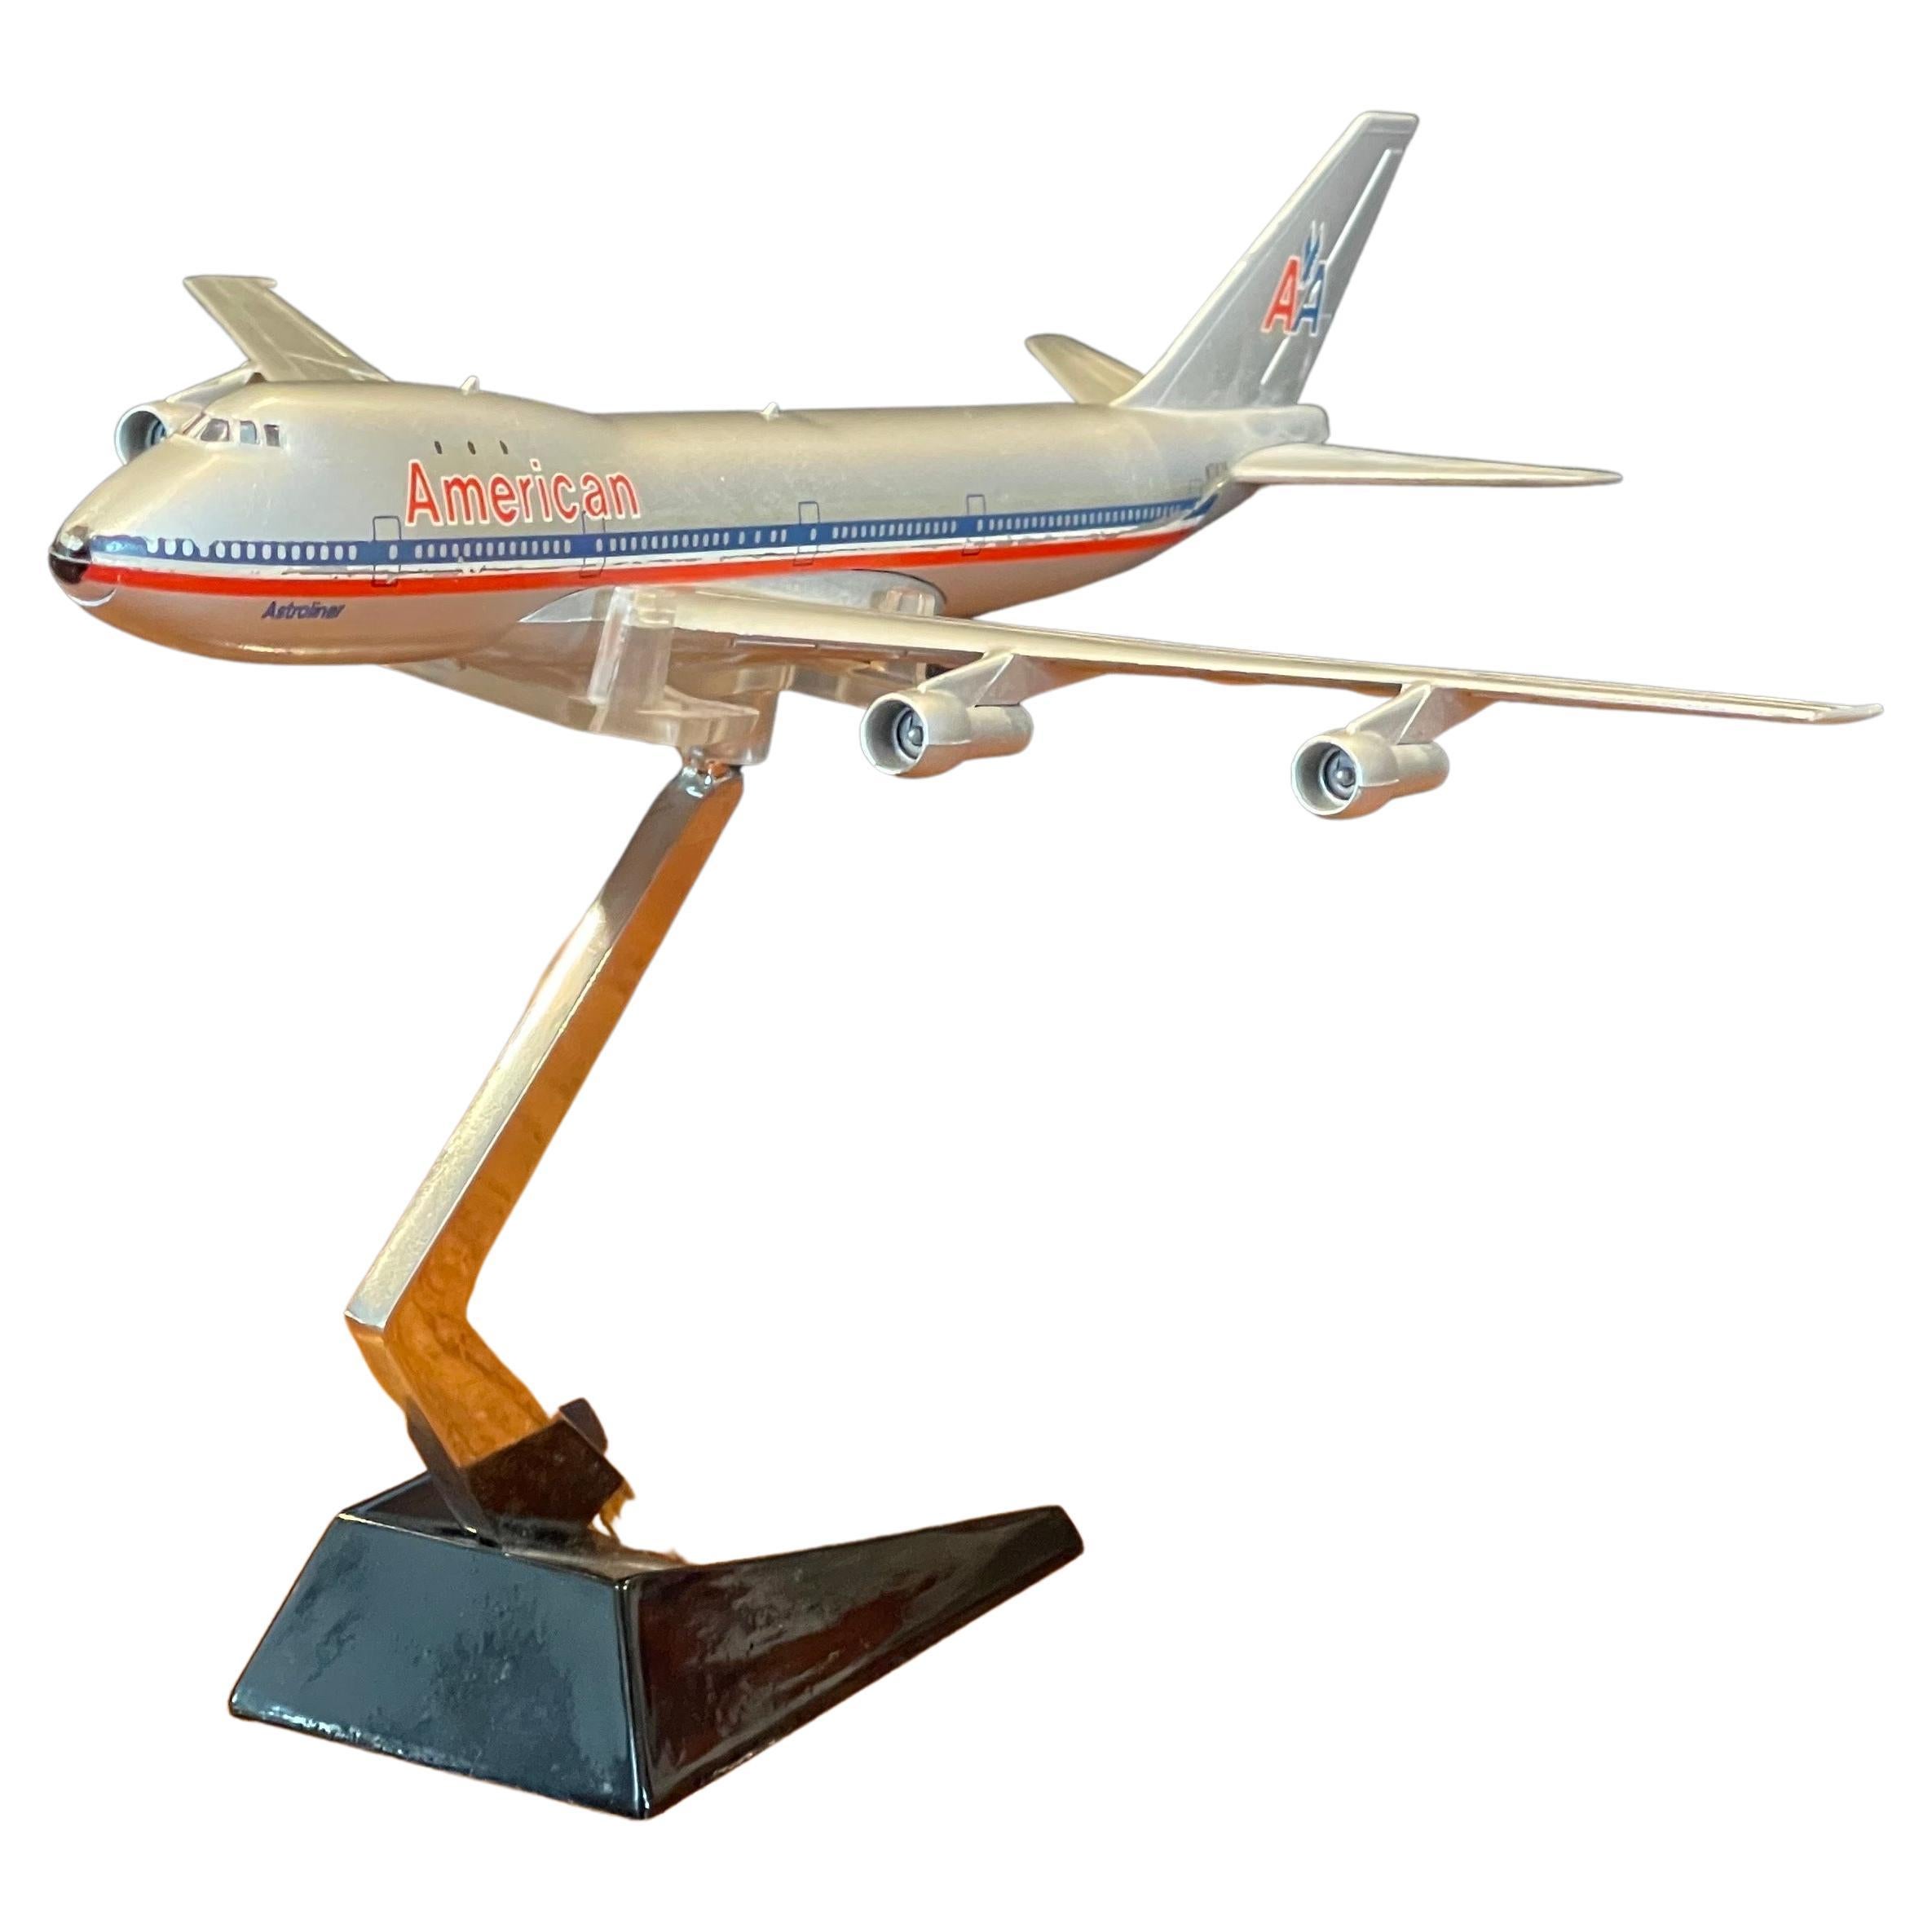 Très belle maquette de bureau du Boeing 747 d'American Airlines, réalisée par la société japonaise Aero Mini, vers les années 1970.  Le modèle mesure 8 pouces d'envergure x 9,5 pouces de profondeur x 6 pouces de hauteur et repose sur un support